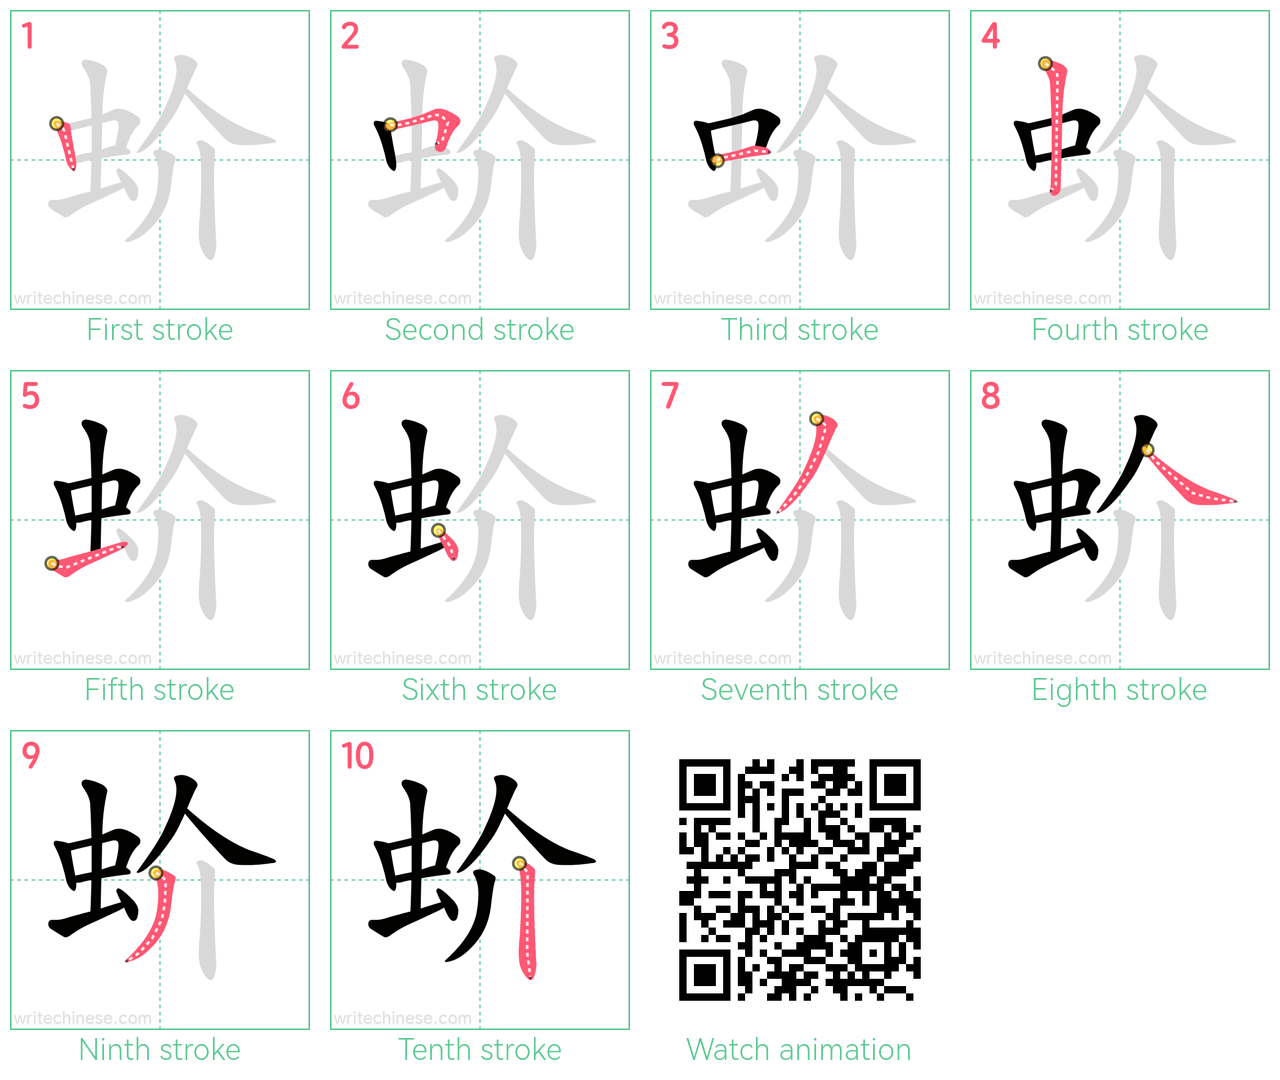 蚧 step-by-step stroke order diagrams